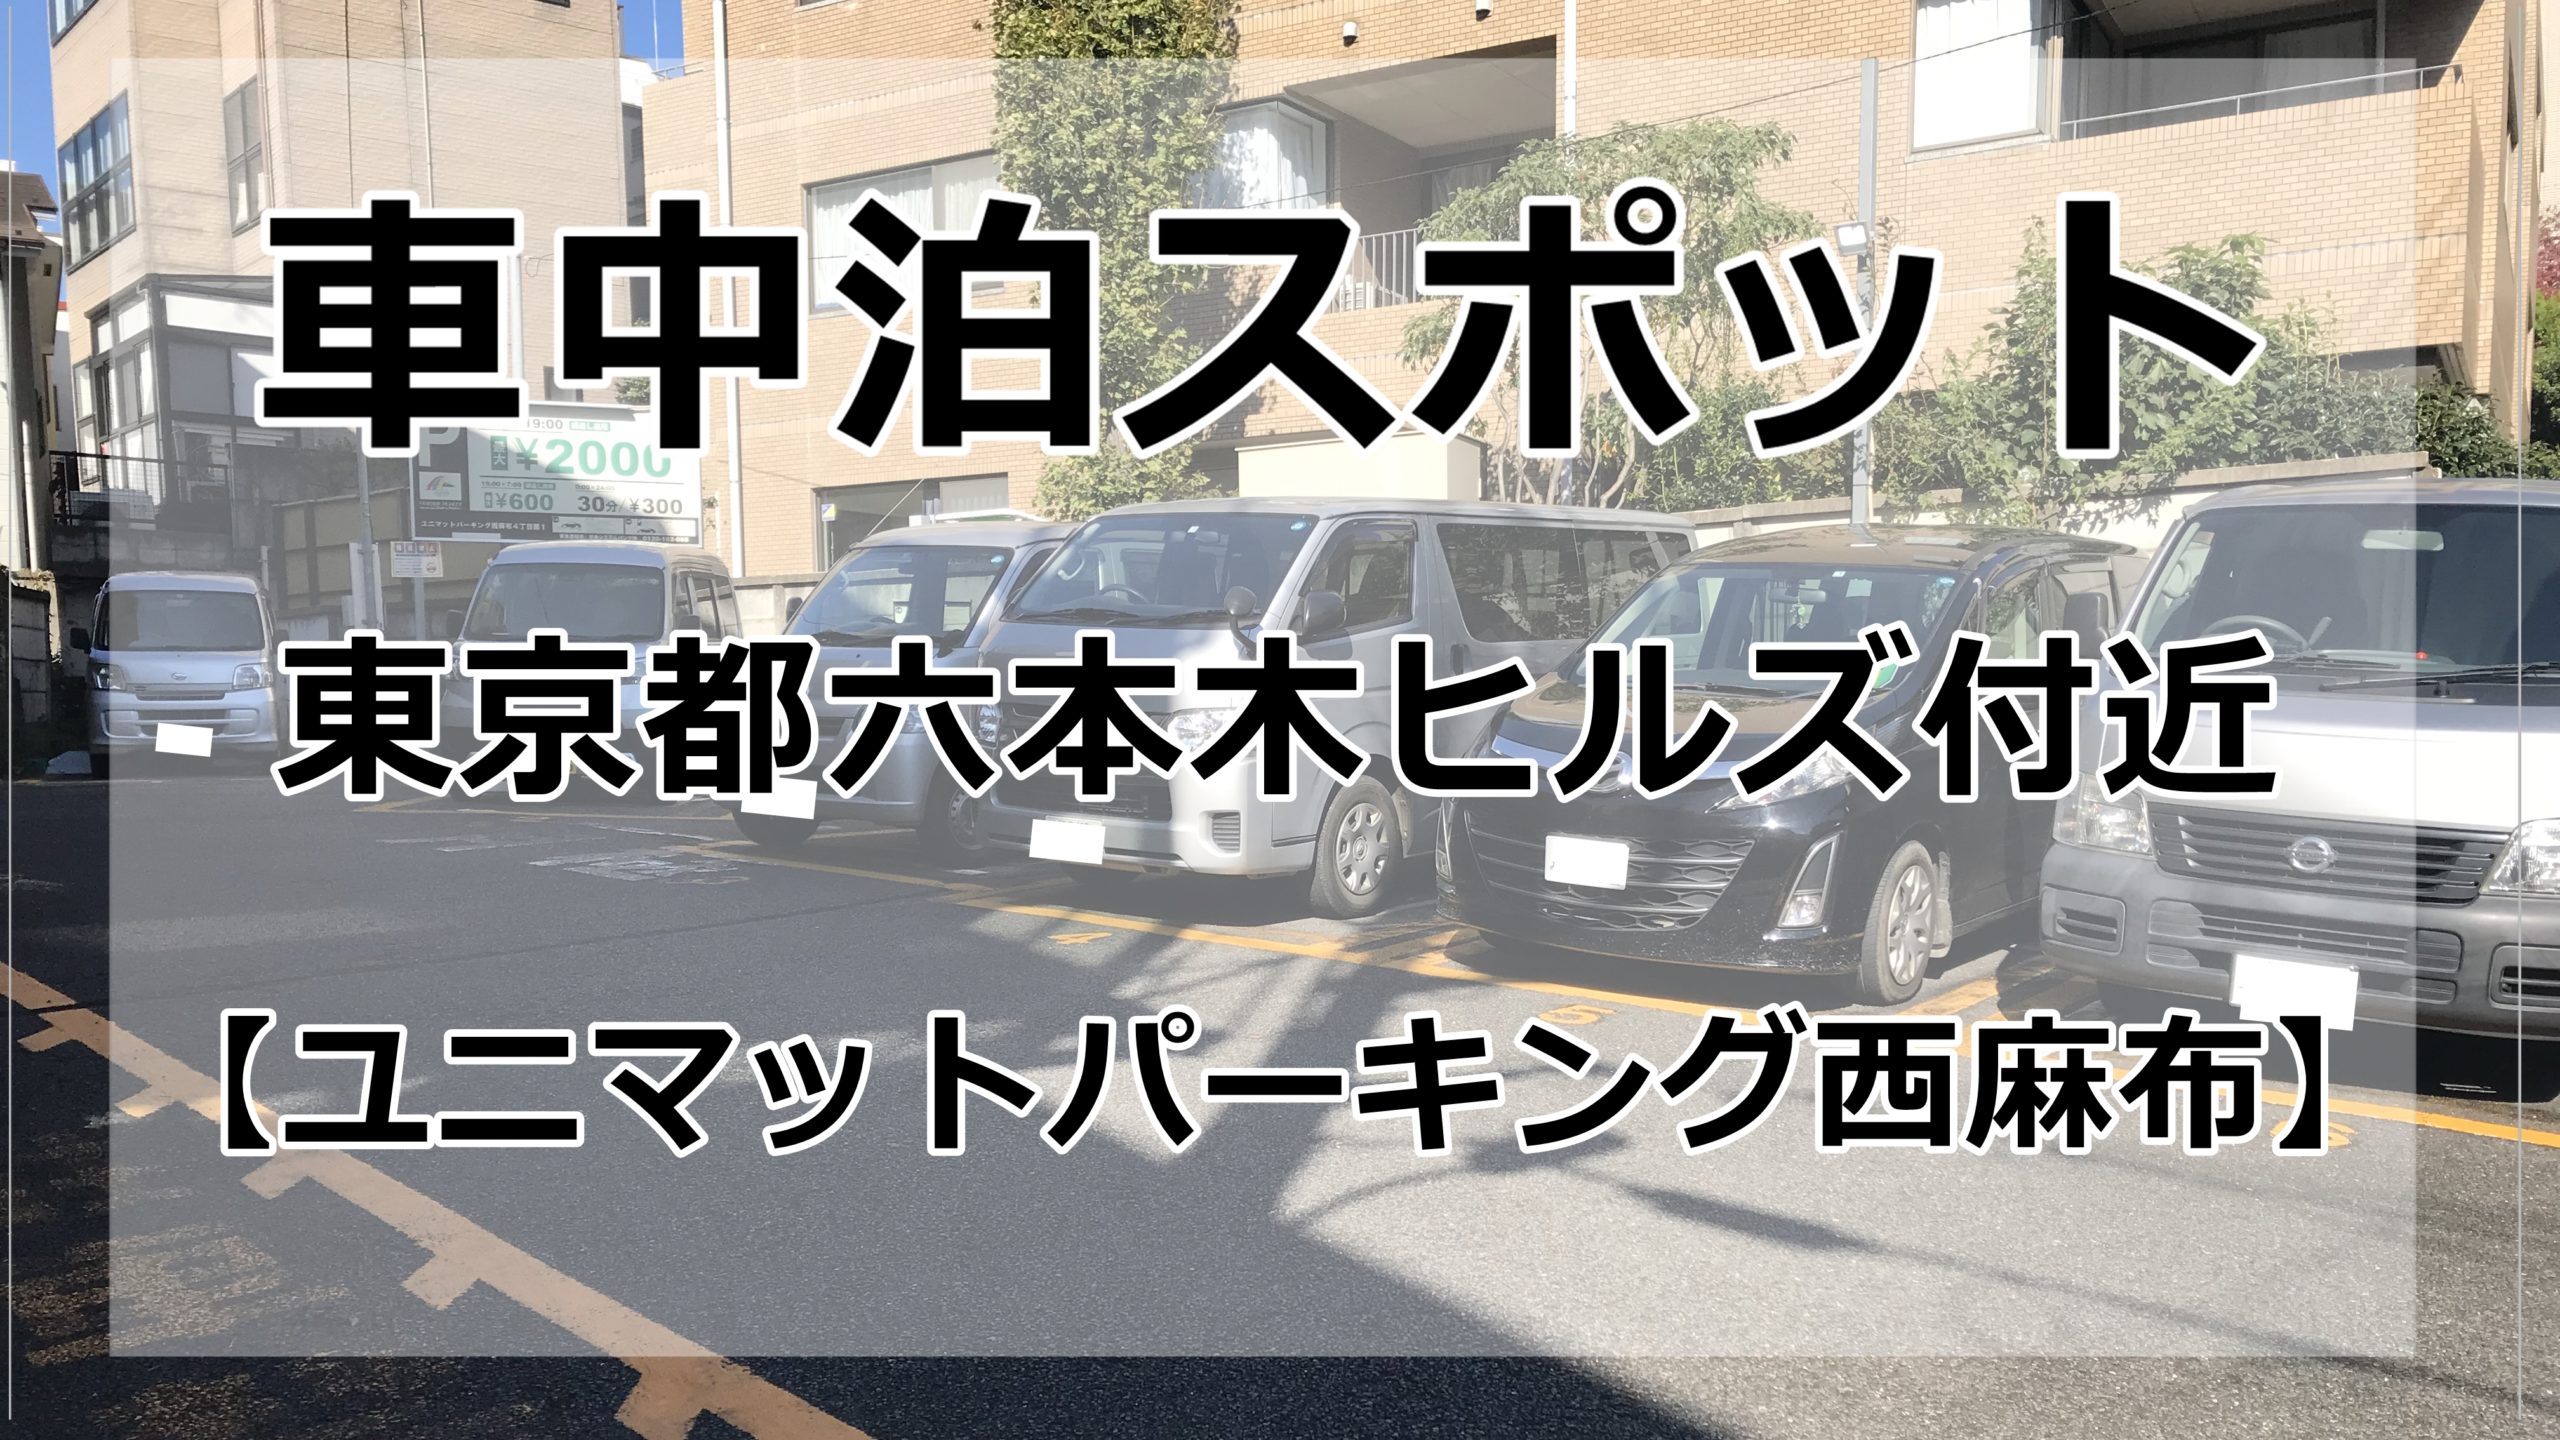 六本木付近 東京都内で車中泊でき 安い料金の駐車場をご紹介 ブログ 車中泊女子 初心者向けバンライフブログ